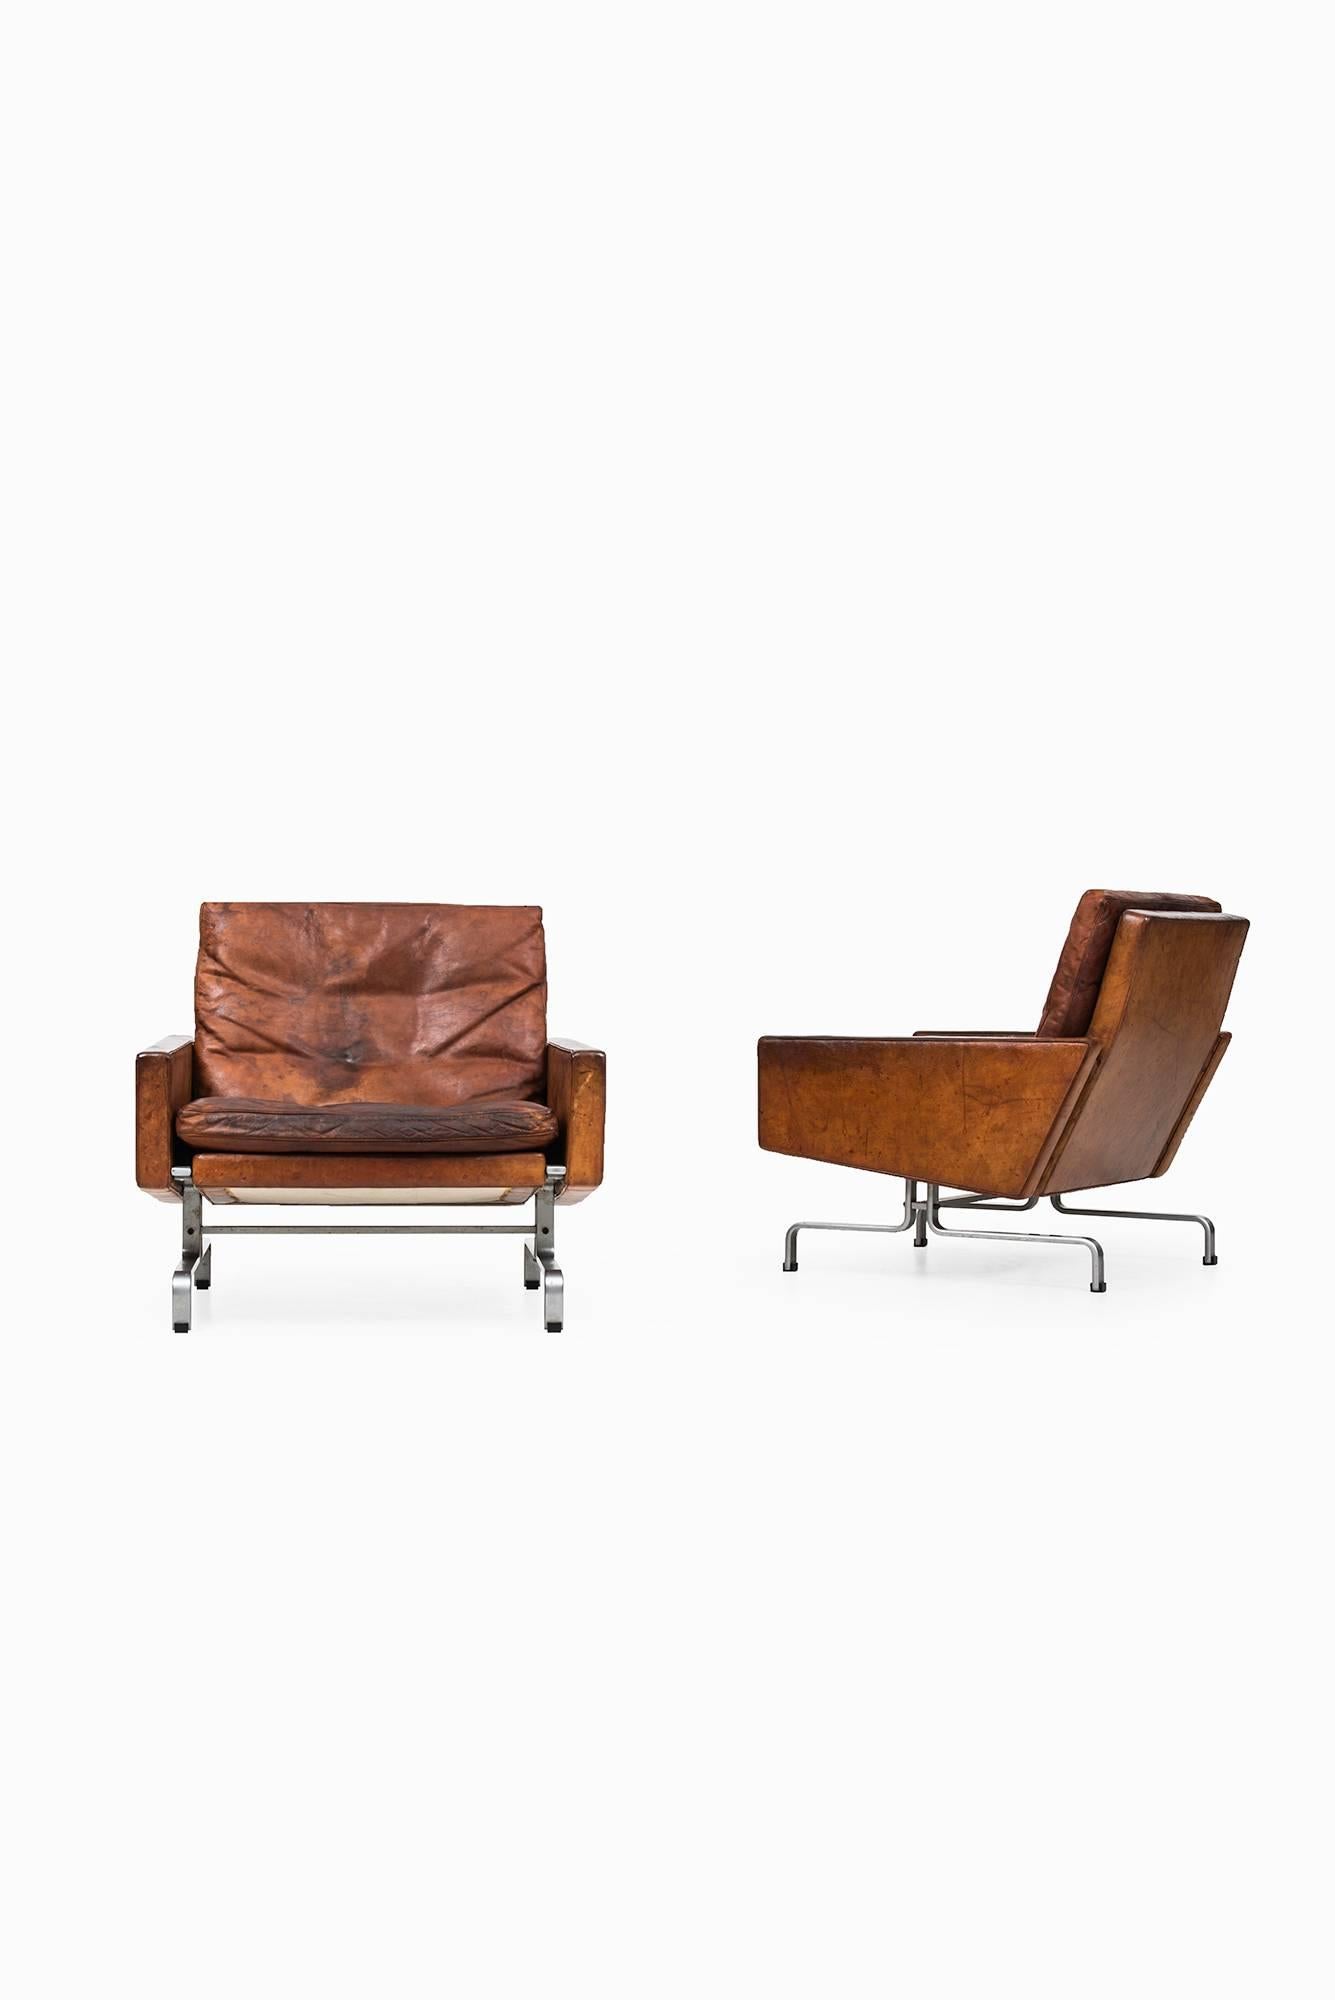 Rare pair of easy chairs model PK-31/1 designed by Poul Kjærholm. Produced by E. Kold Christensen in Denmark.